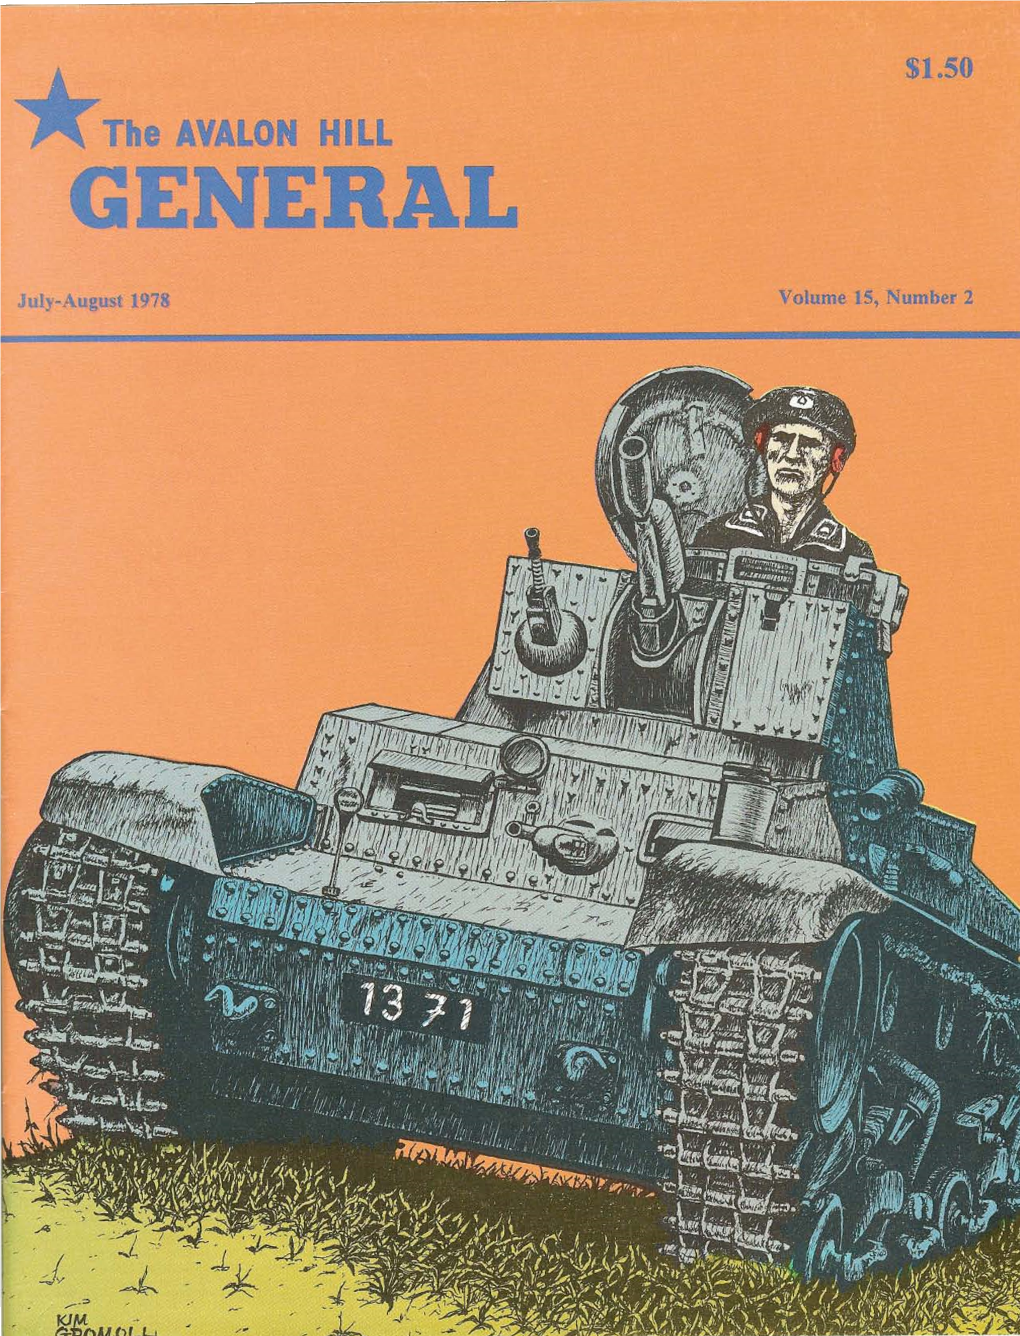 The General Vol 15 No 2